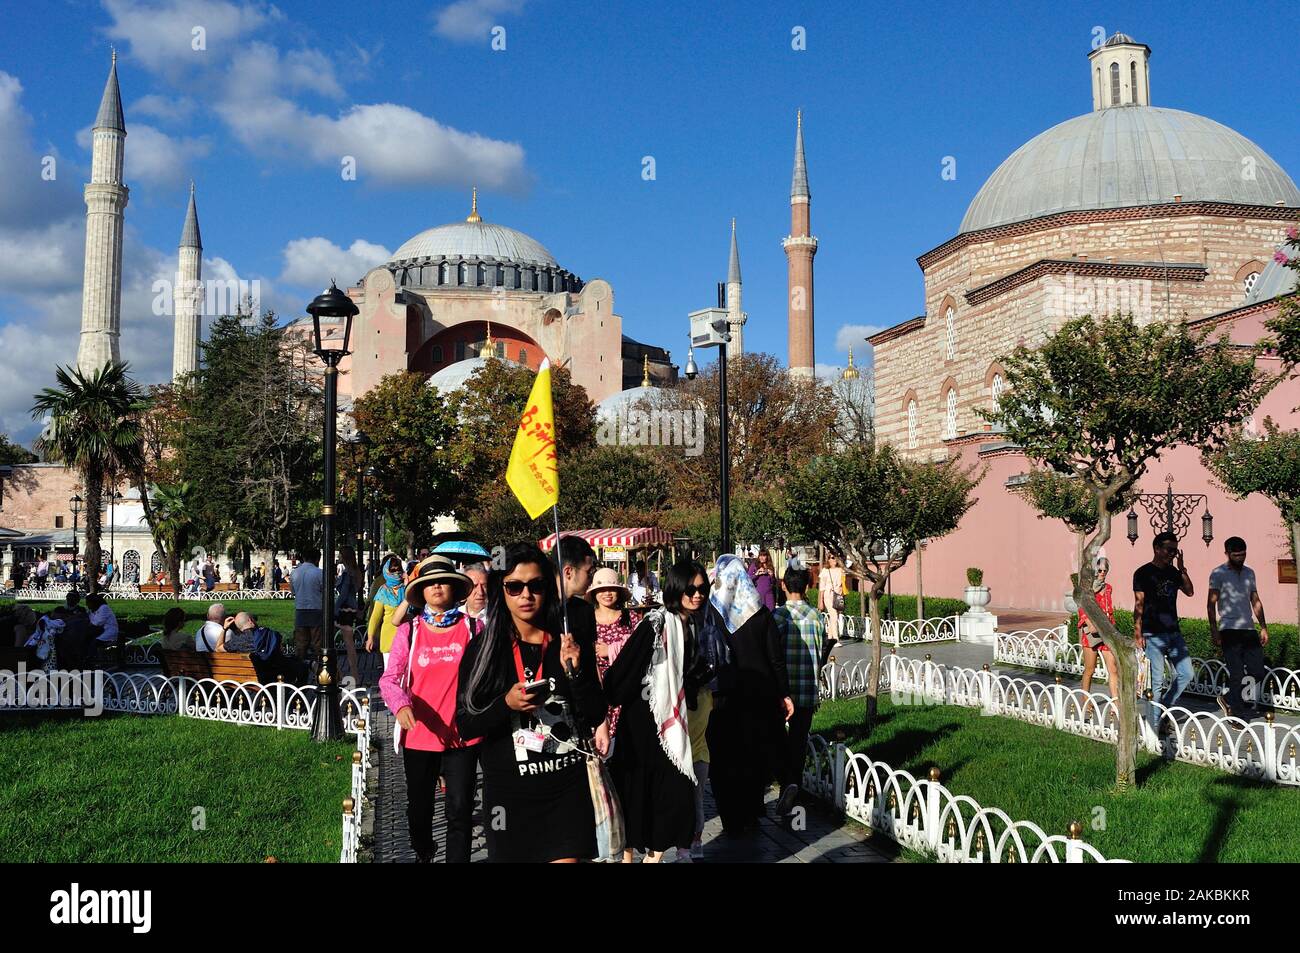 La mosquée Sainte-Sophie à Istanbul - Turquie - Détroit du Bosphore Banque D'Images